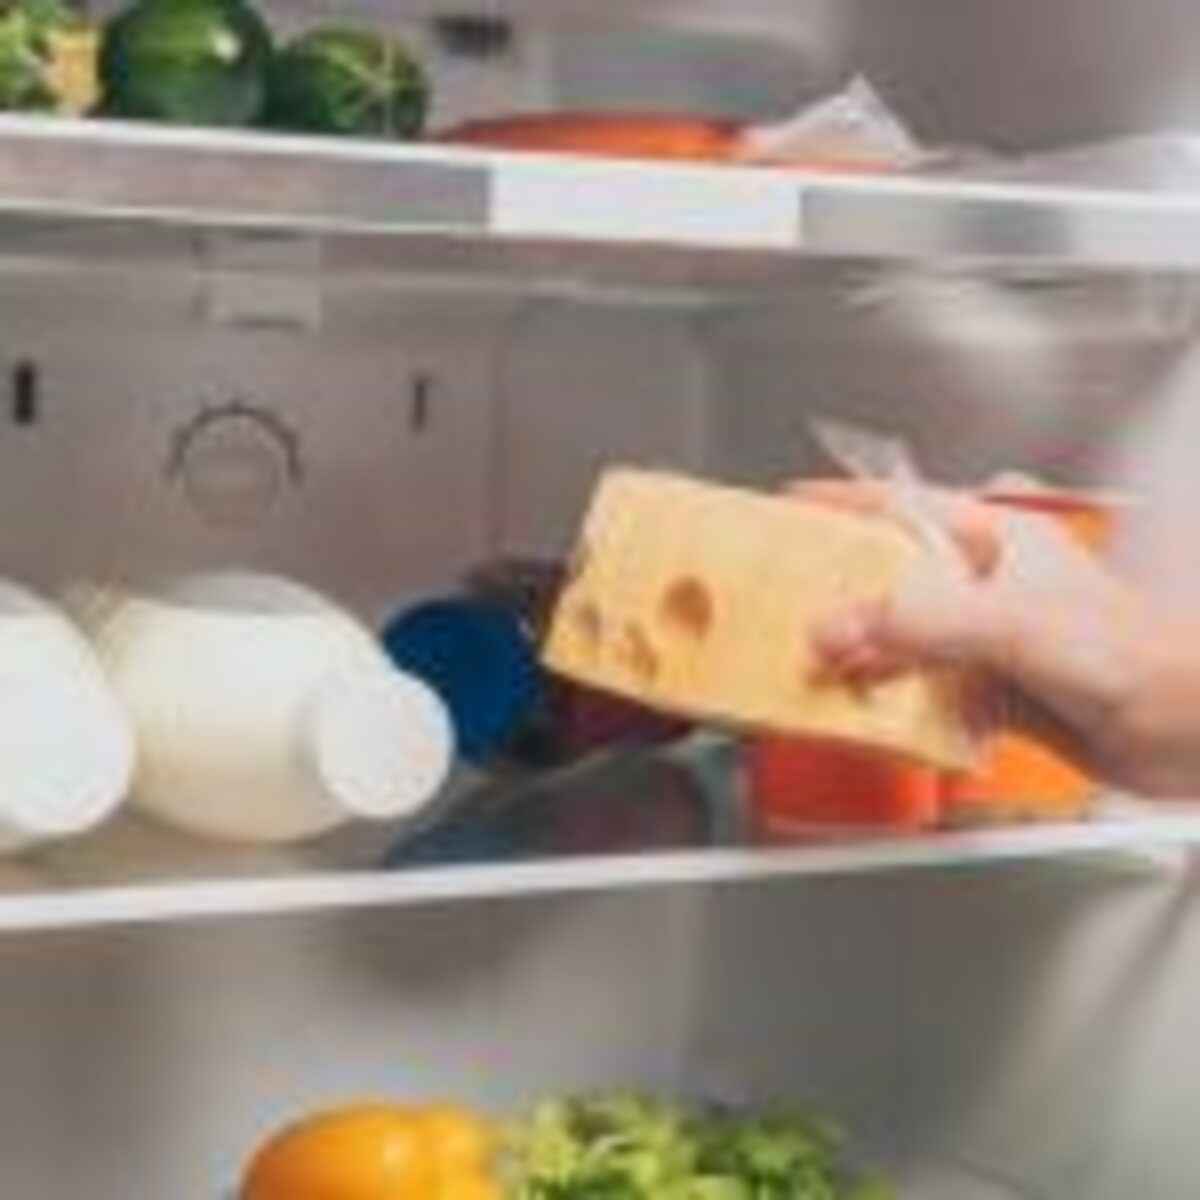 GERAL-armazenar-queijos-jefferson-almeida-conservar-geladeira